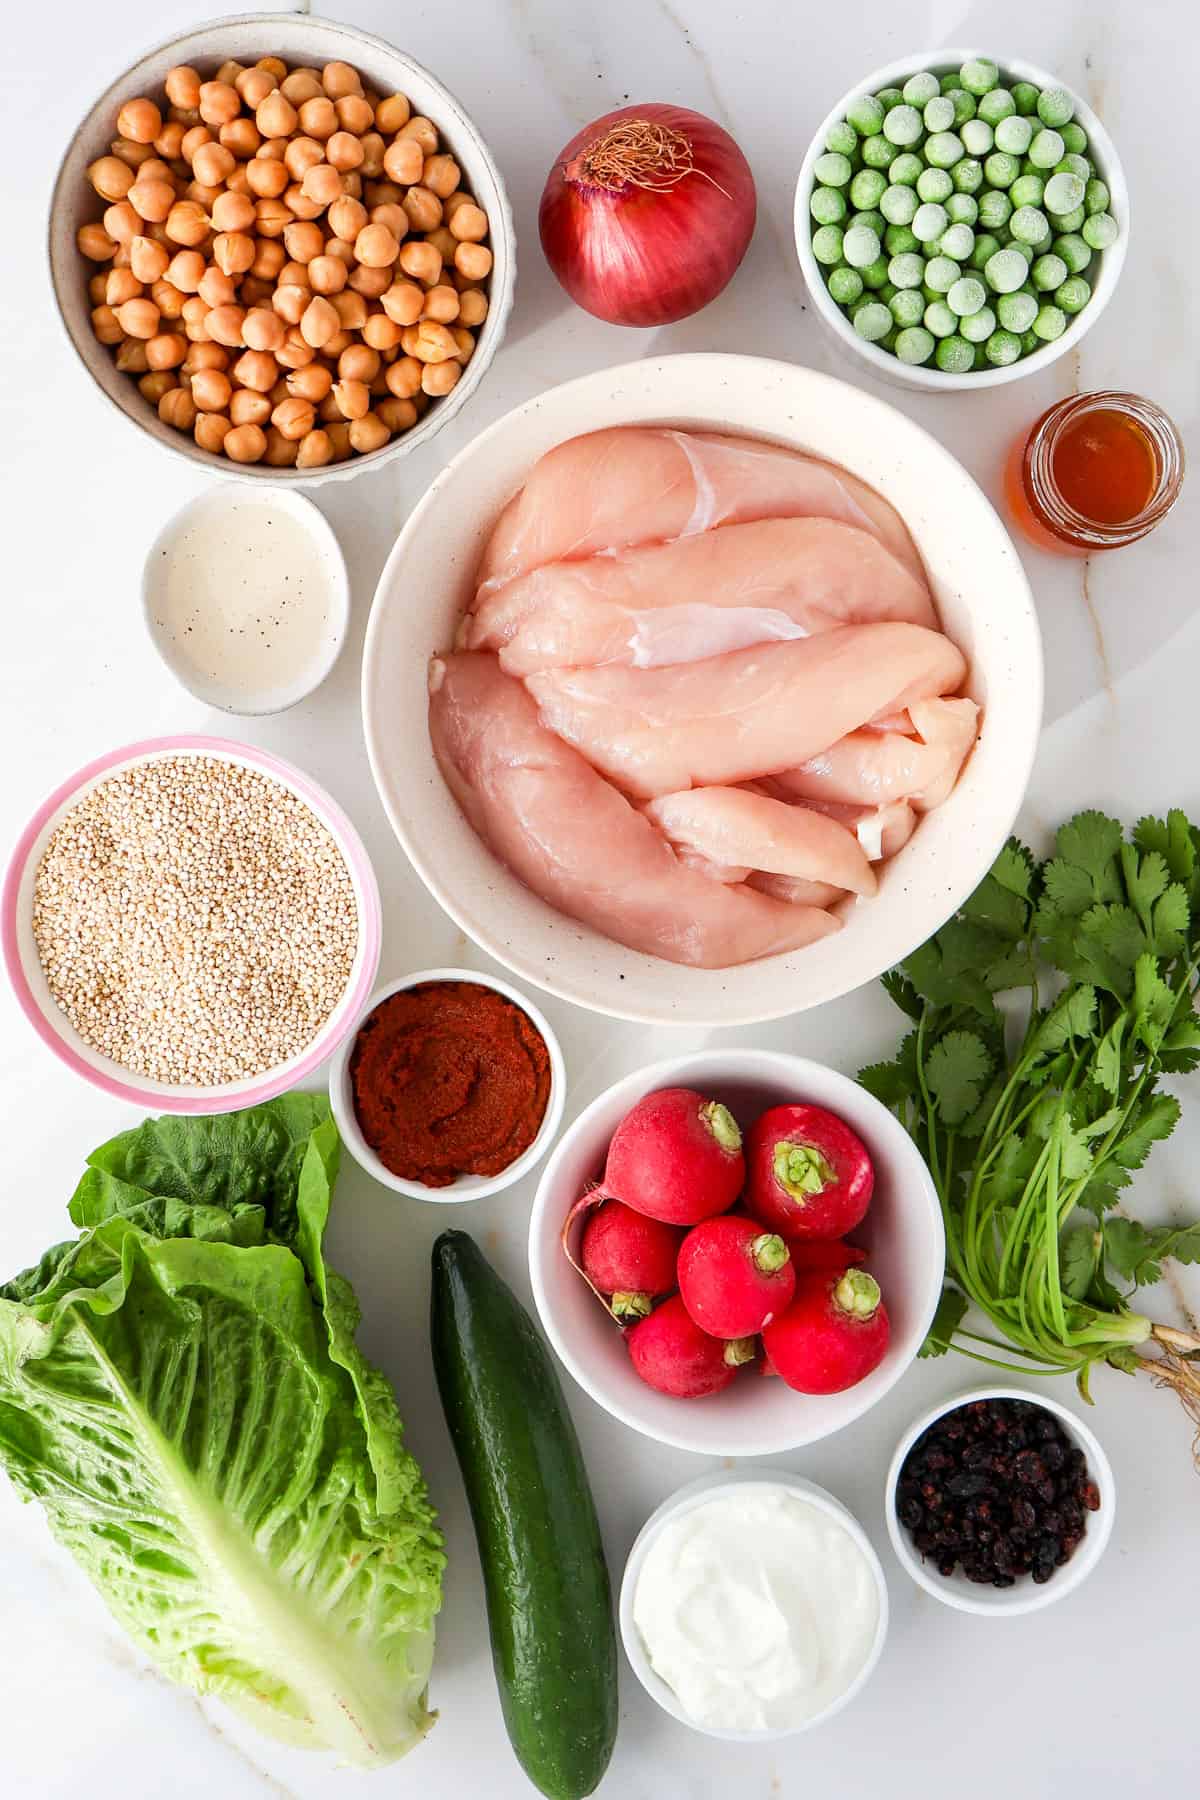 Ingredients shown to make chicken tikka salad.